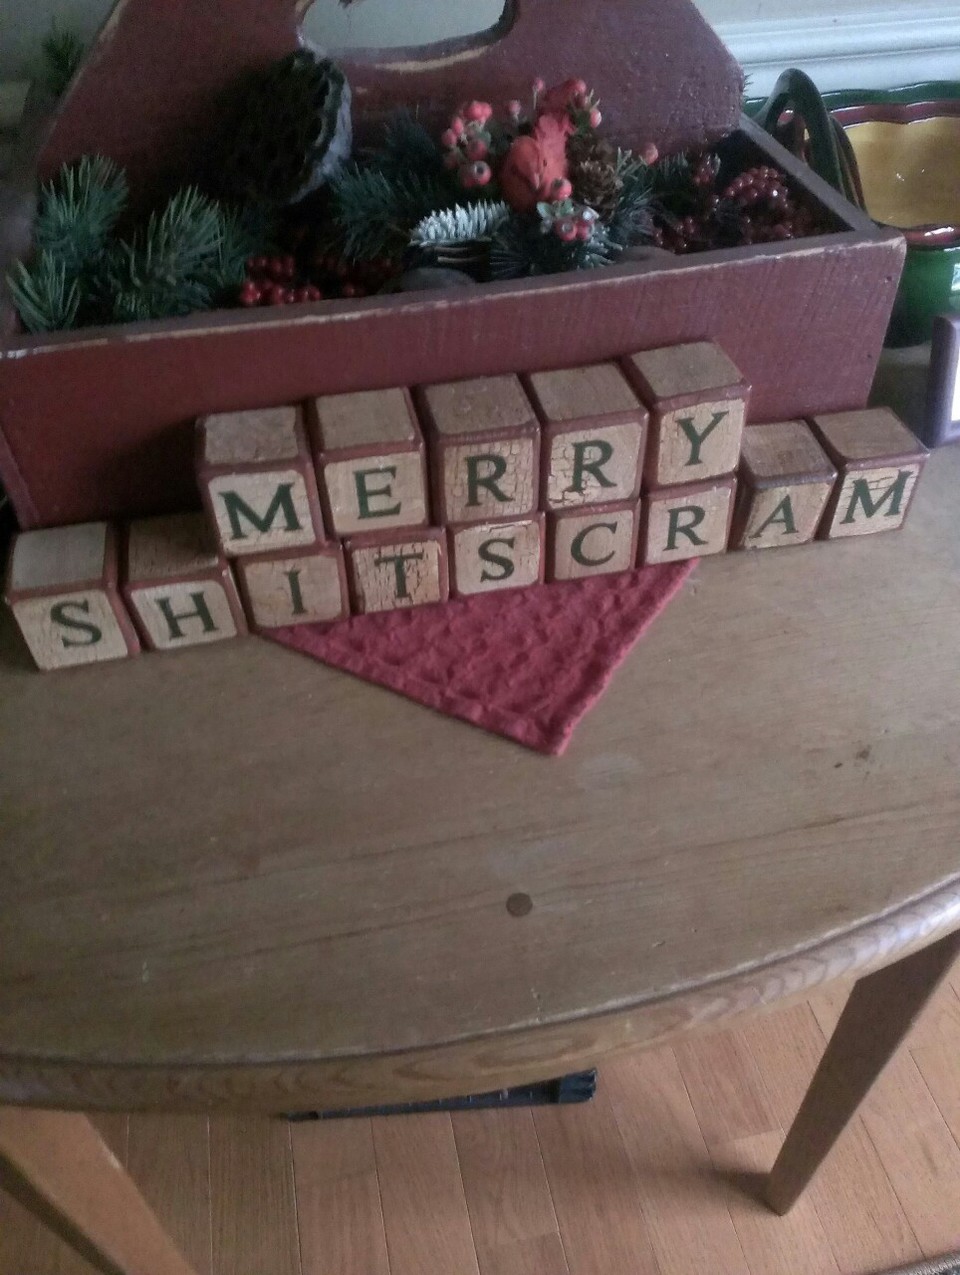 Merry shitscram